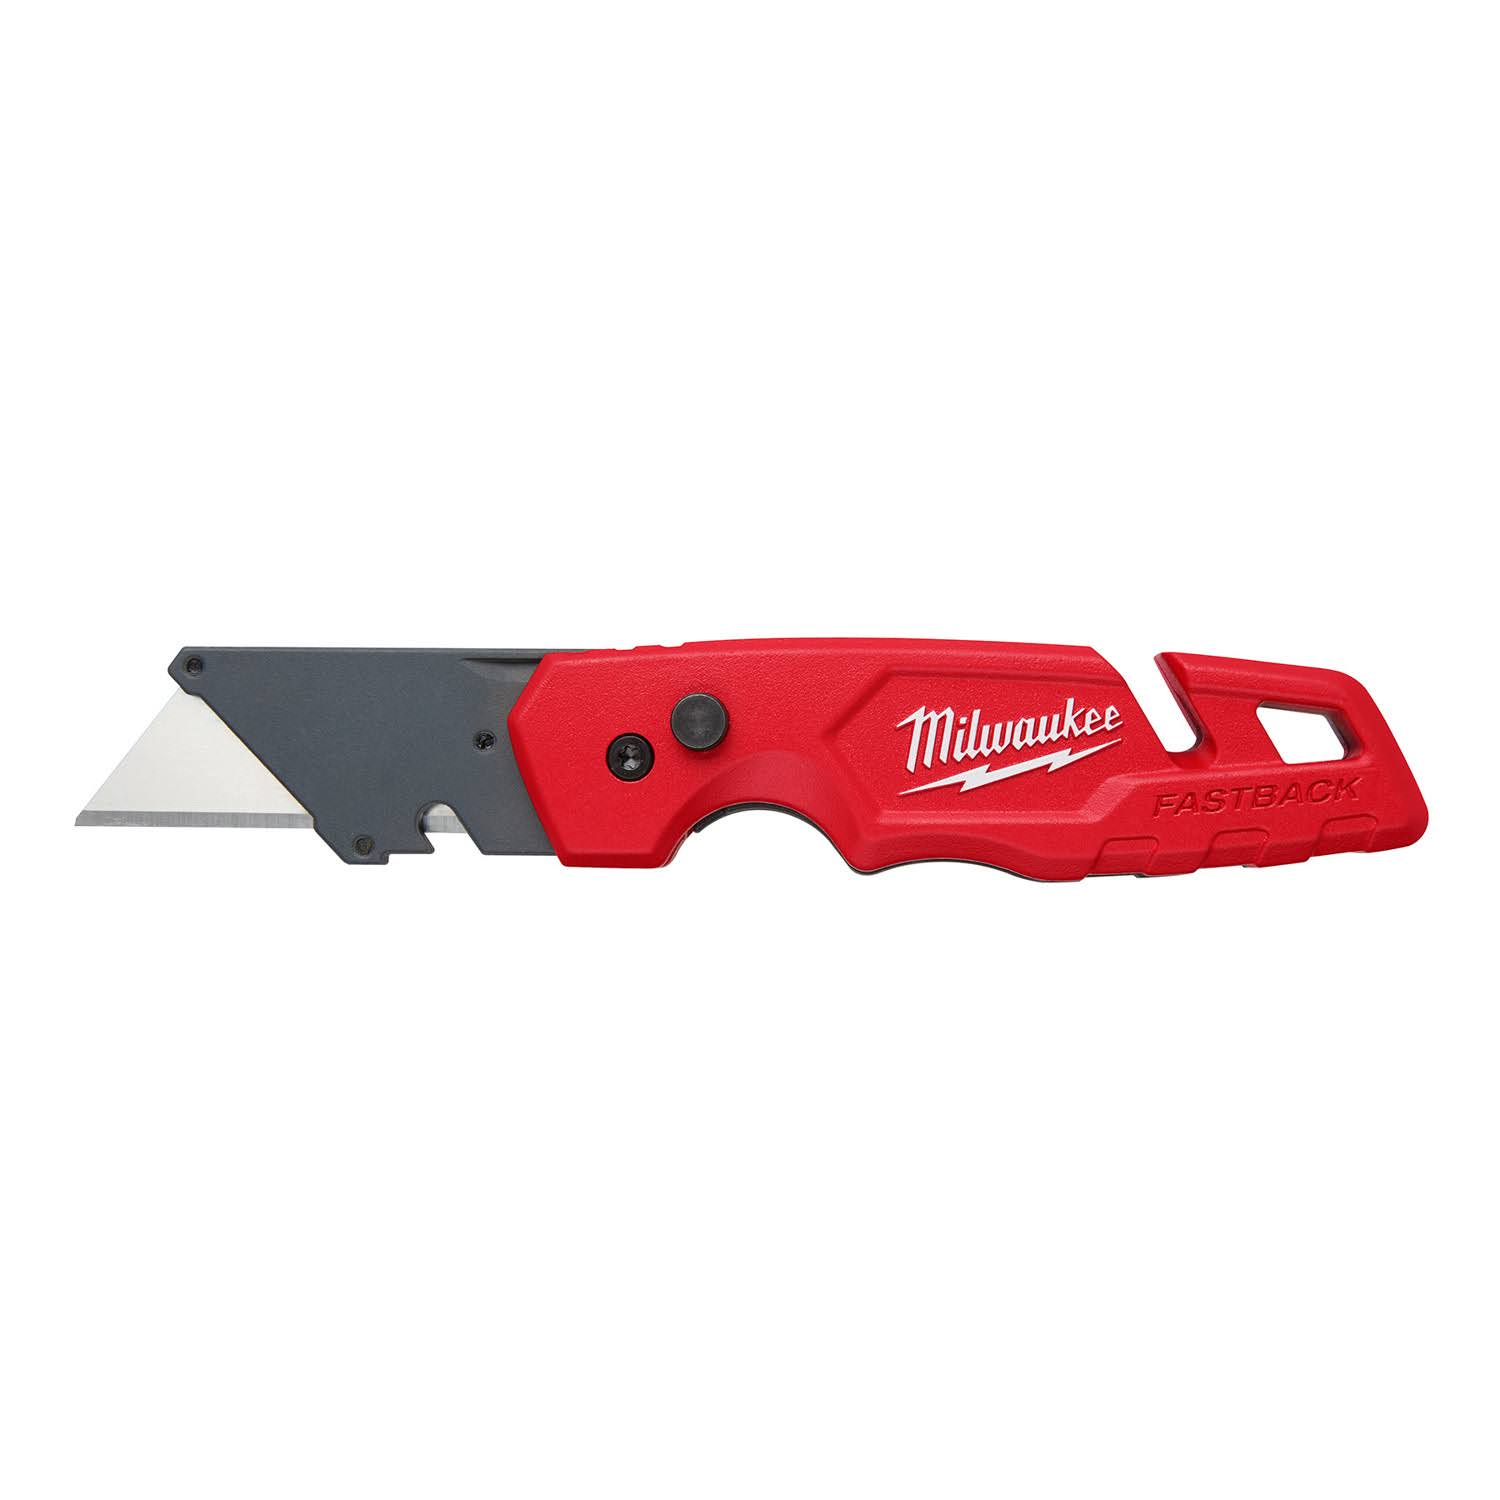 Milwaukee Fastback Folding Utility Knife w/ Blade Storage